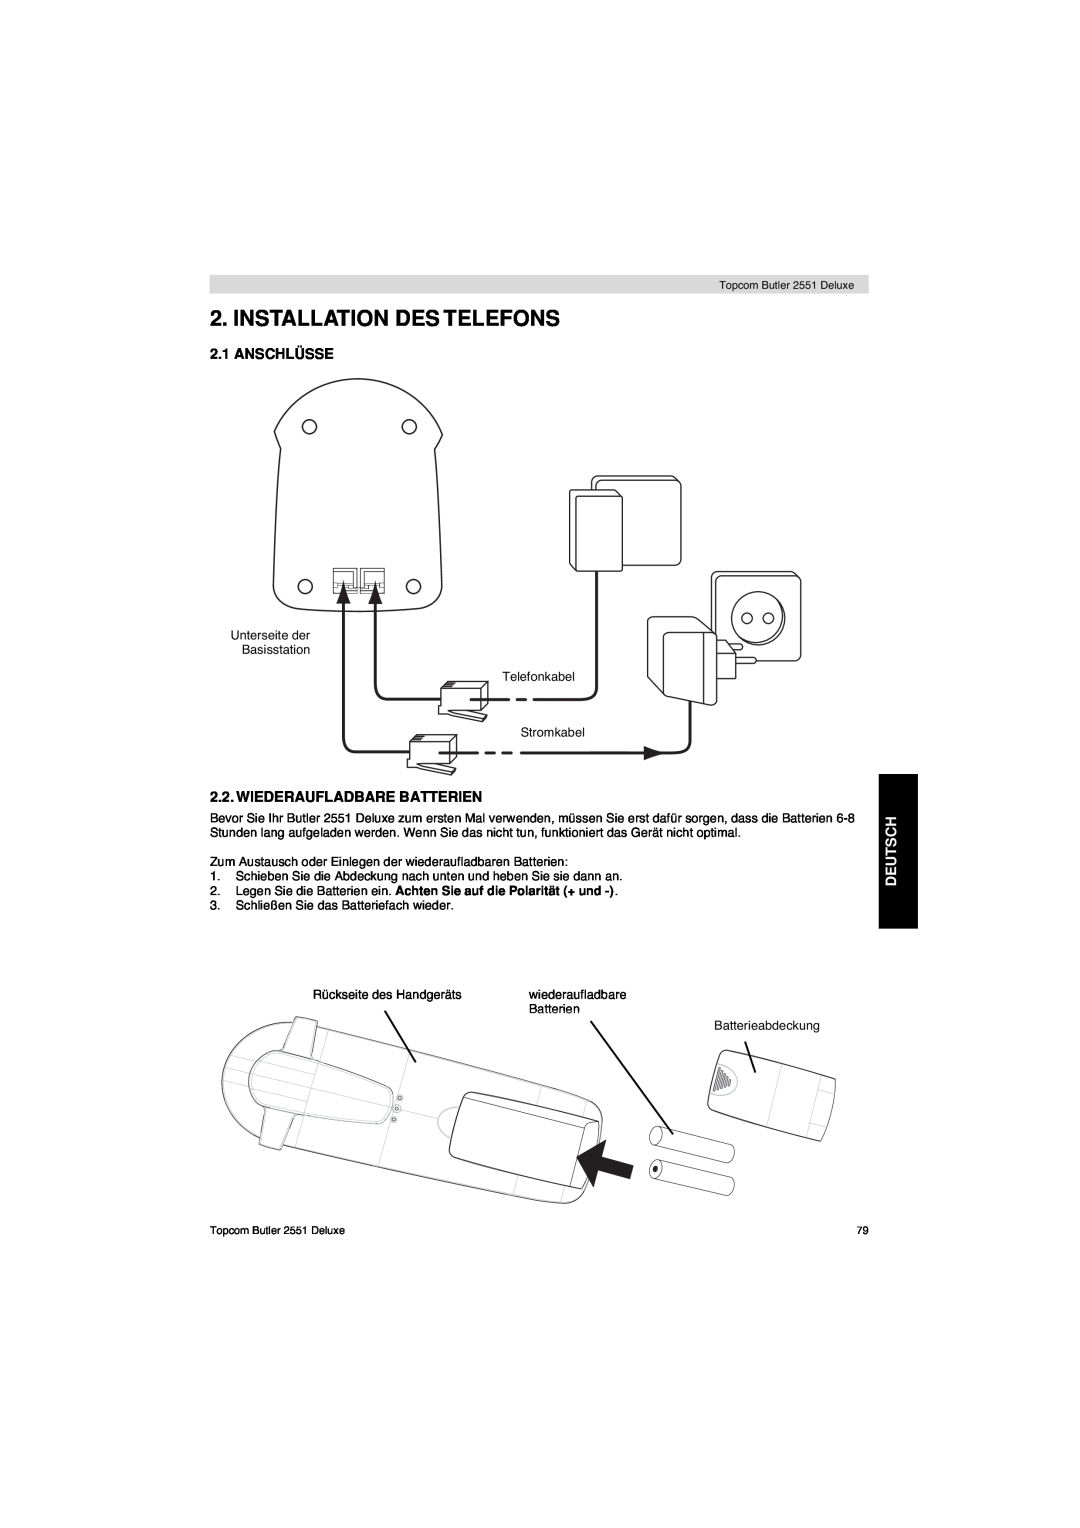 Topcom 2551 manual Installation Des Telefons, Anschlüsse, Wiederaufladbare Batterien, Deutsch 